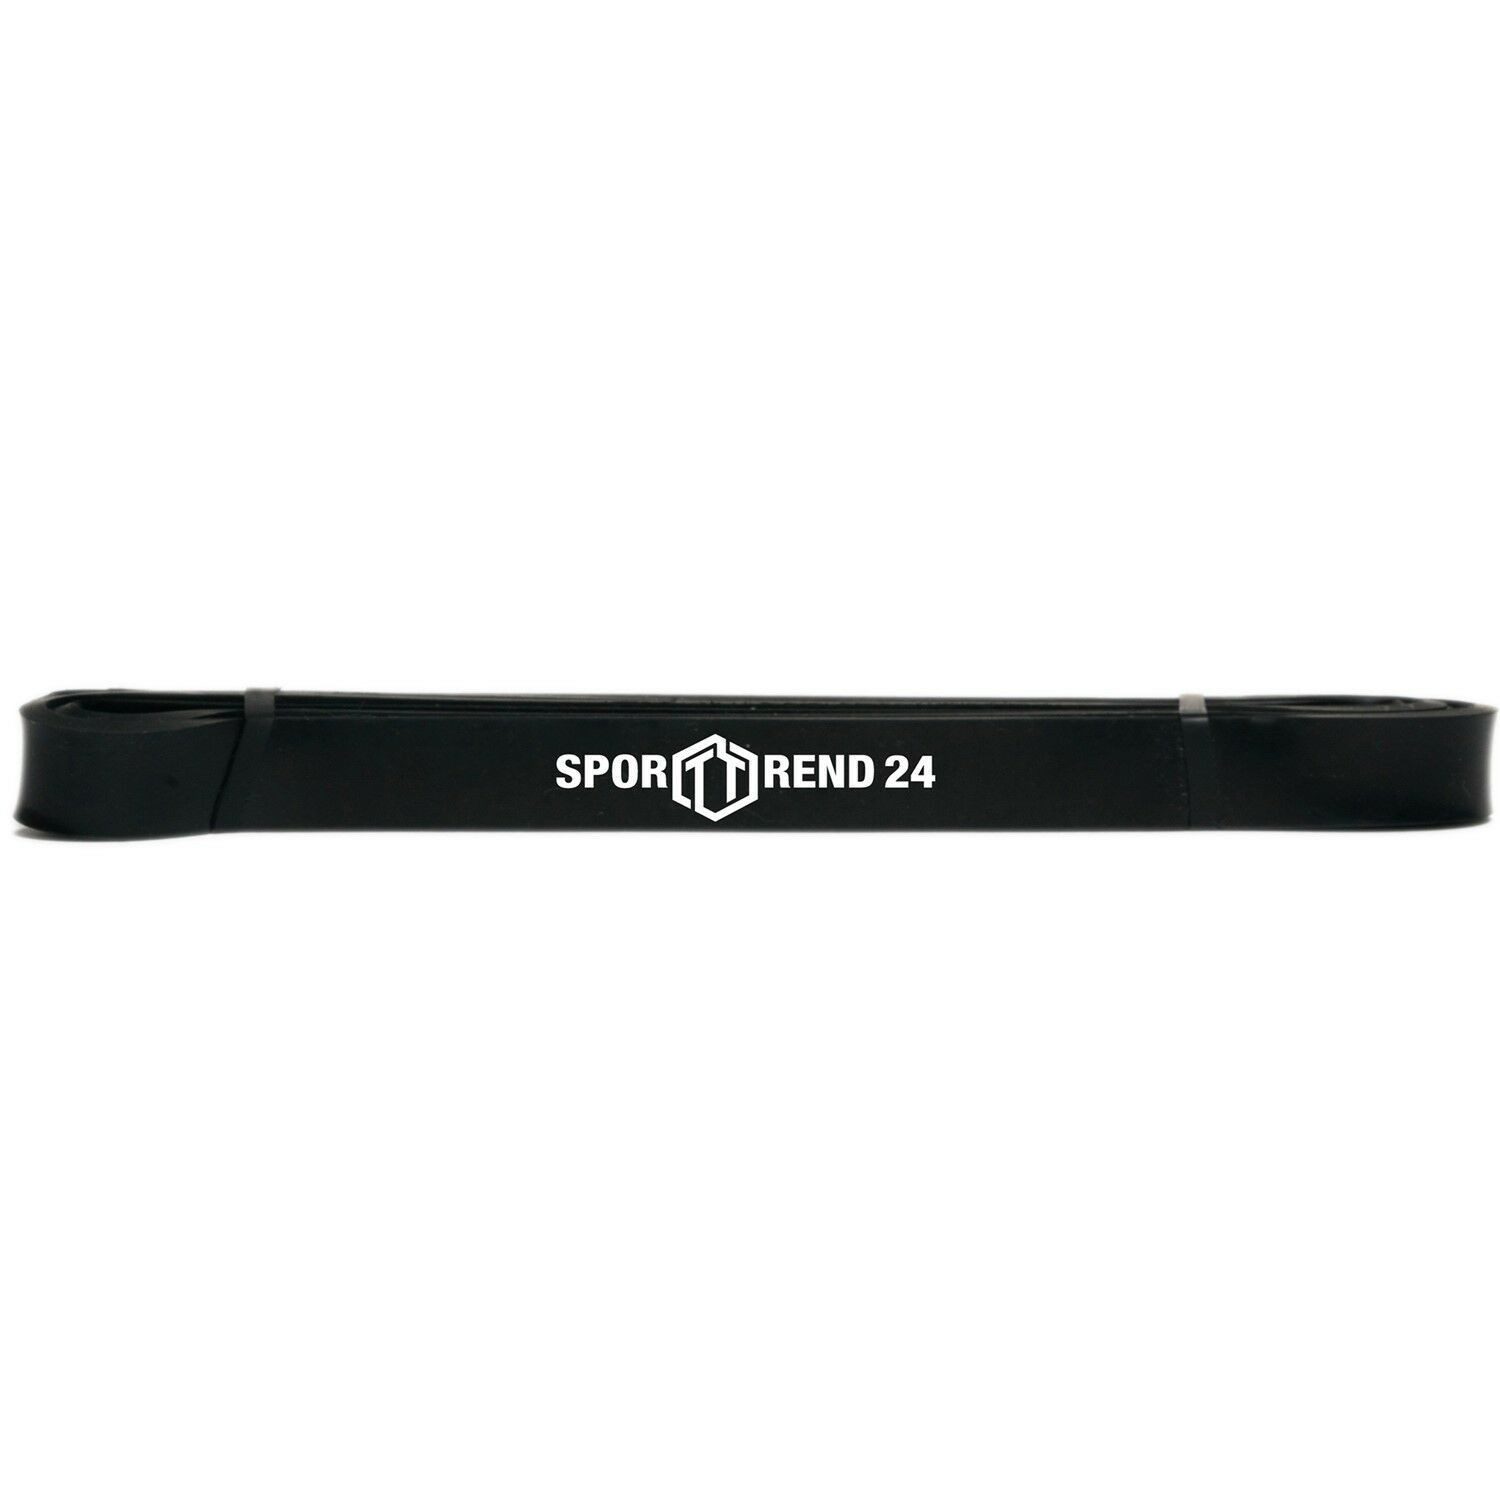 Sporttrend 24 Gymnastikbänder Schwarz 21mm bis 36,29KG, Trainingsband